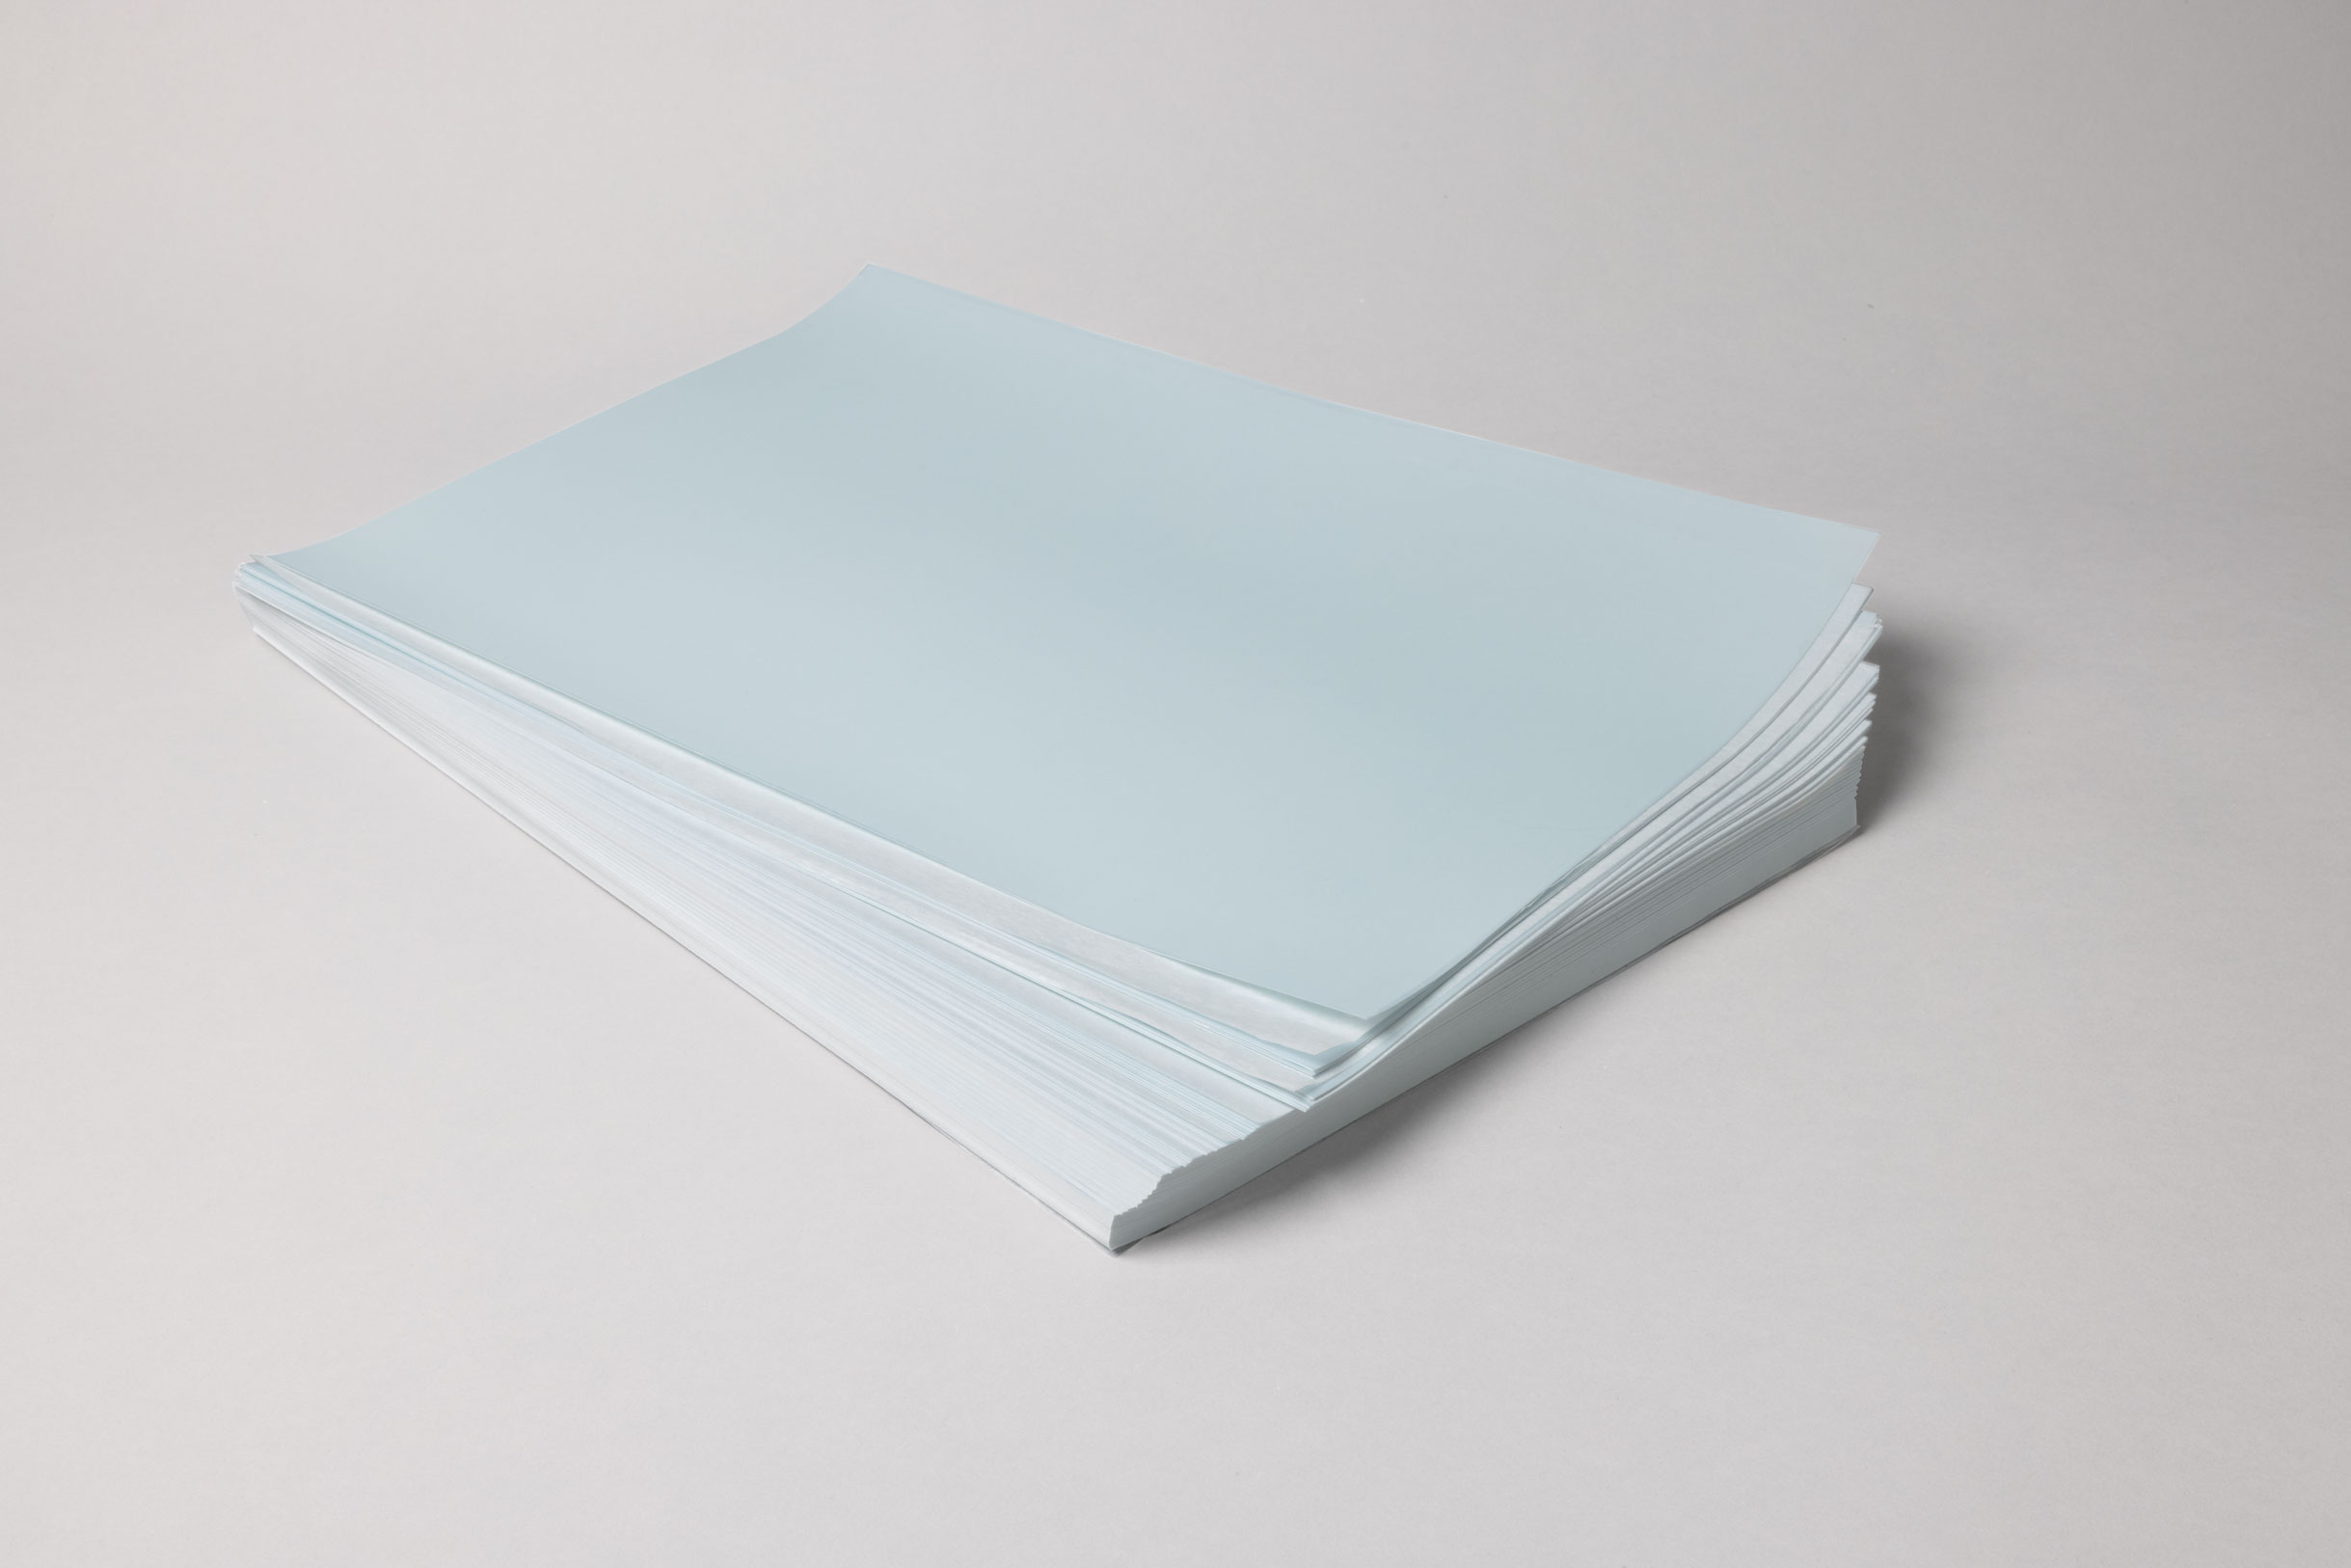 Ceramictoner Vorlackiertes Papier PureCal mit Bleifreifluss eignet sich für die Produktion von Decals.Es ist bereits vorlackiert und in den Größen DIN A4, DIN A3 oder DIN A3 Übergröße erhältlich.